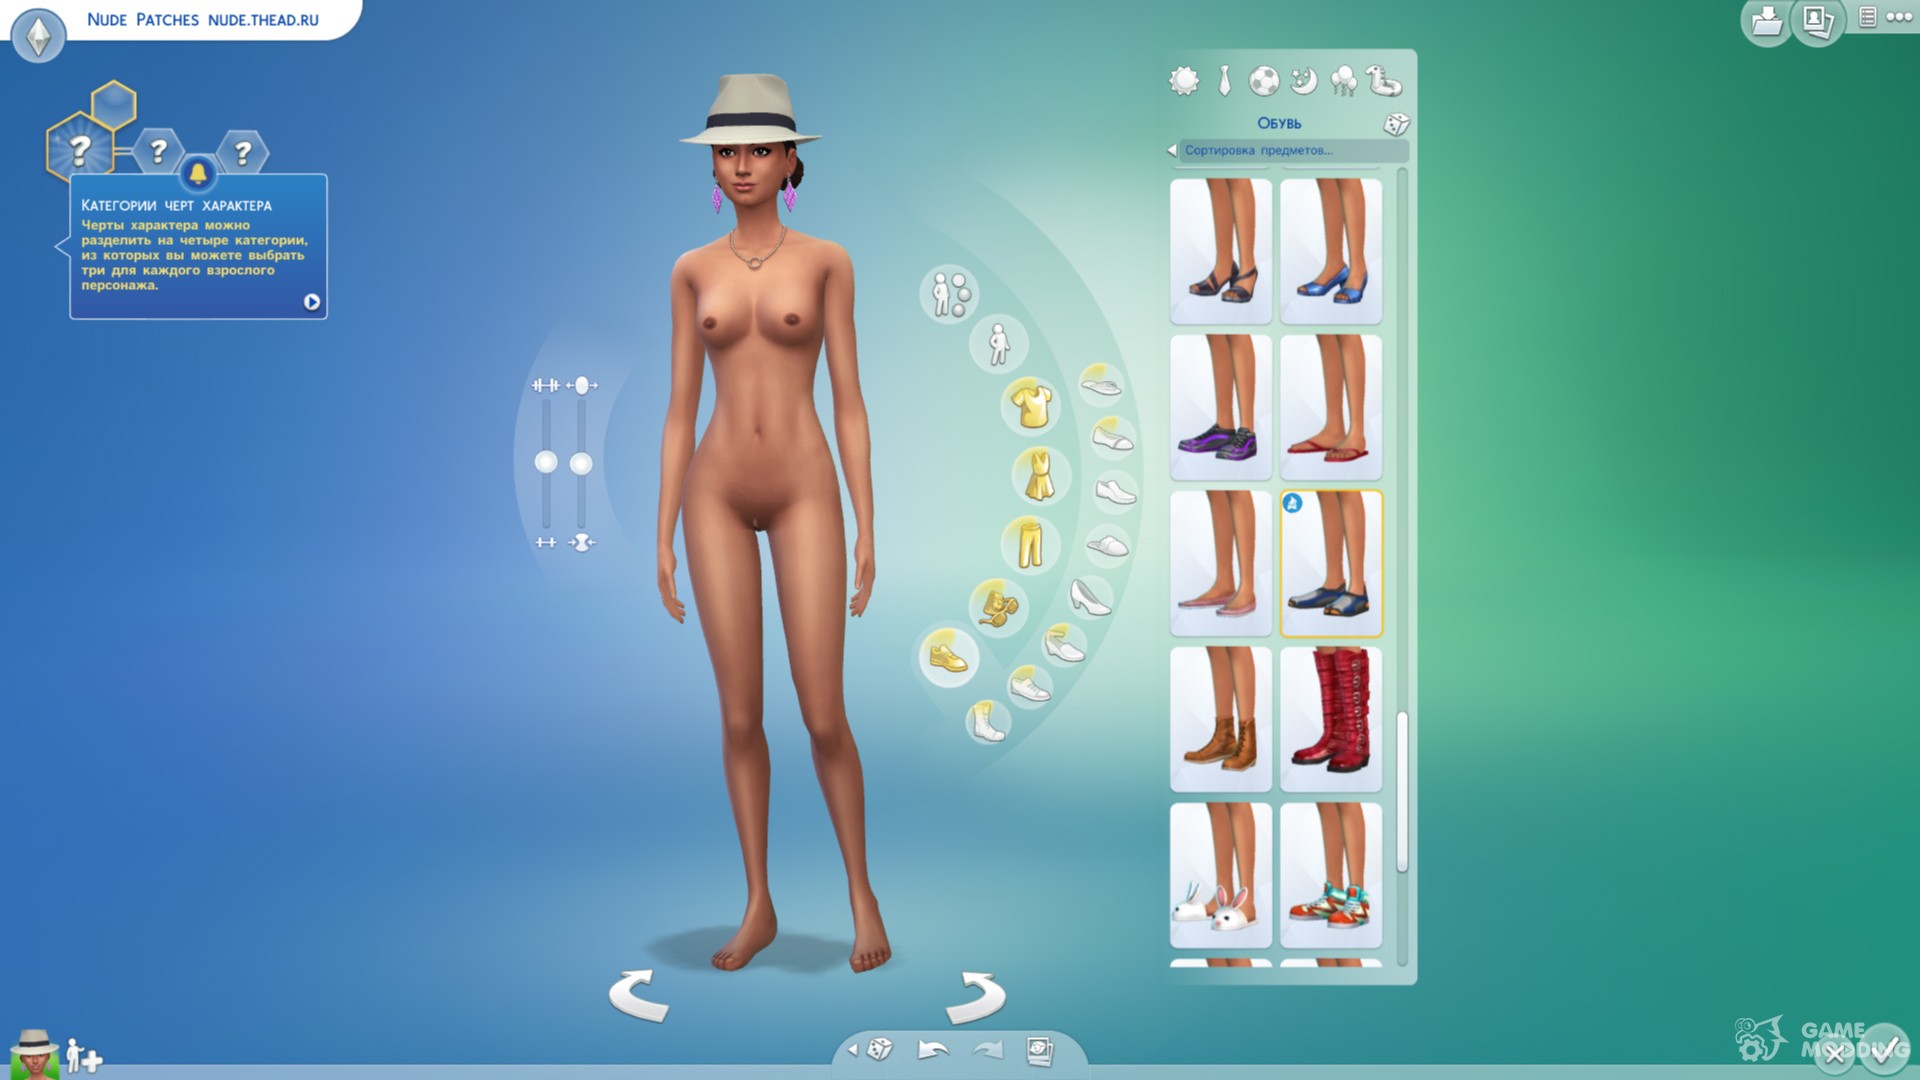 ankur handique recommends Sims 4 Nude Textures